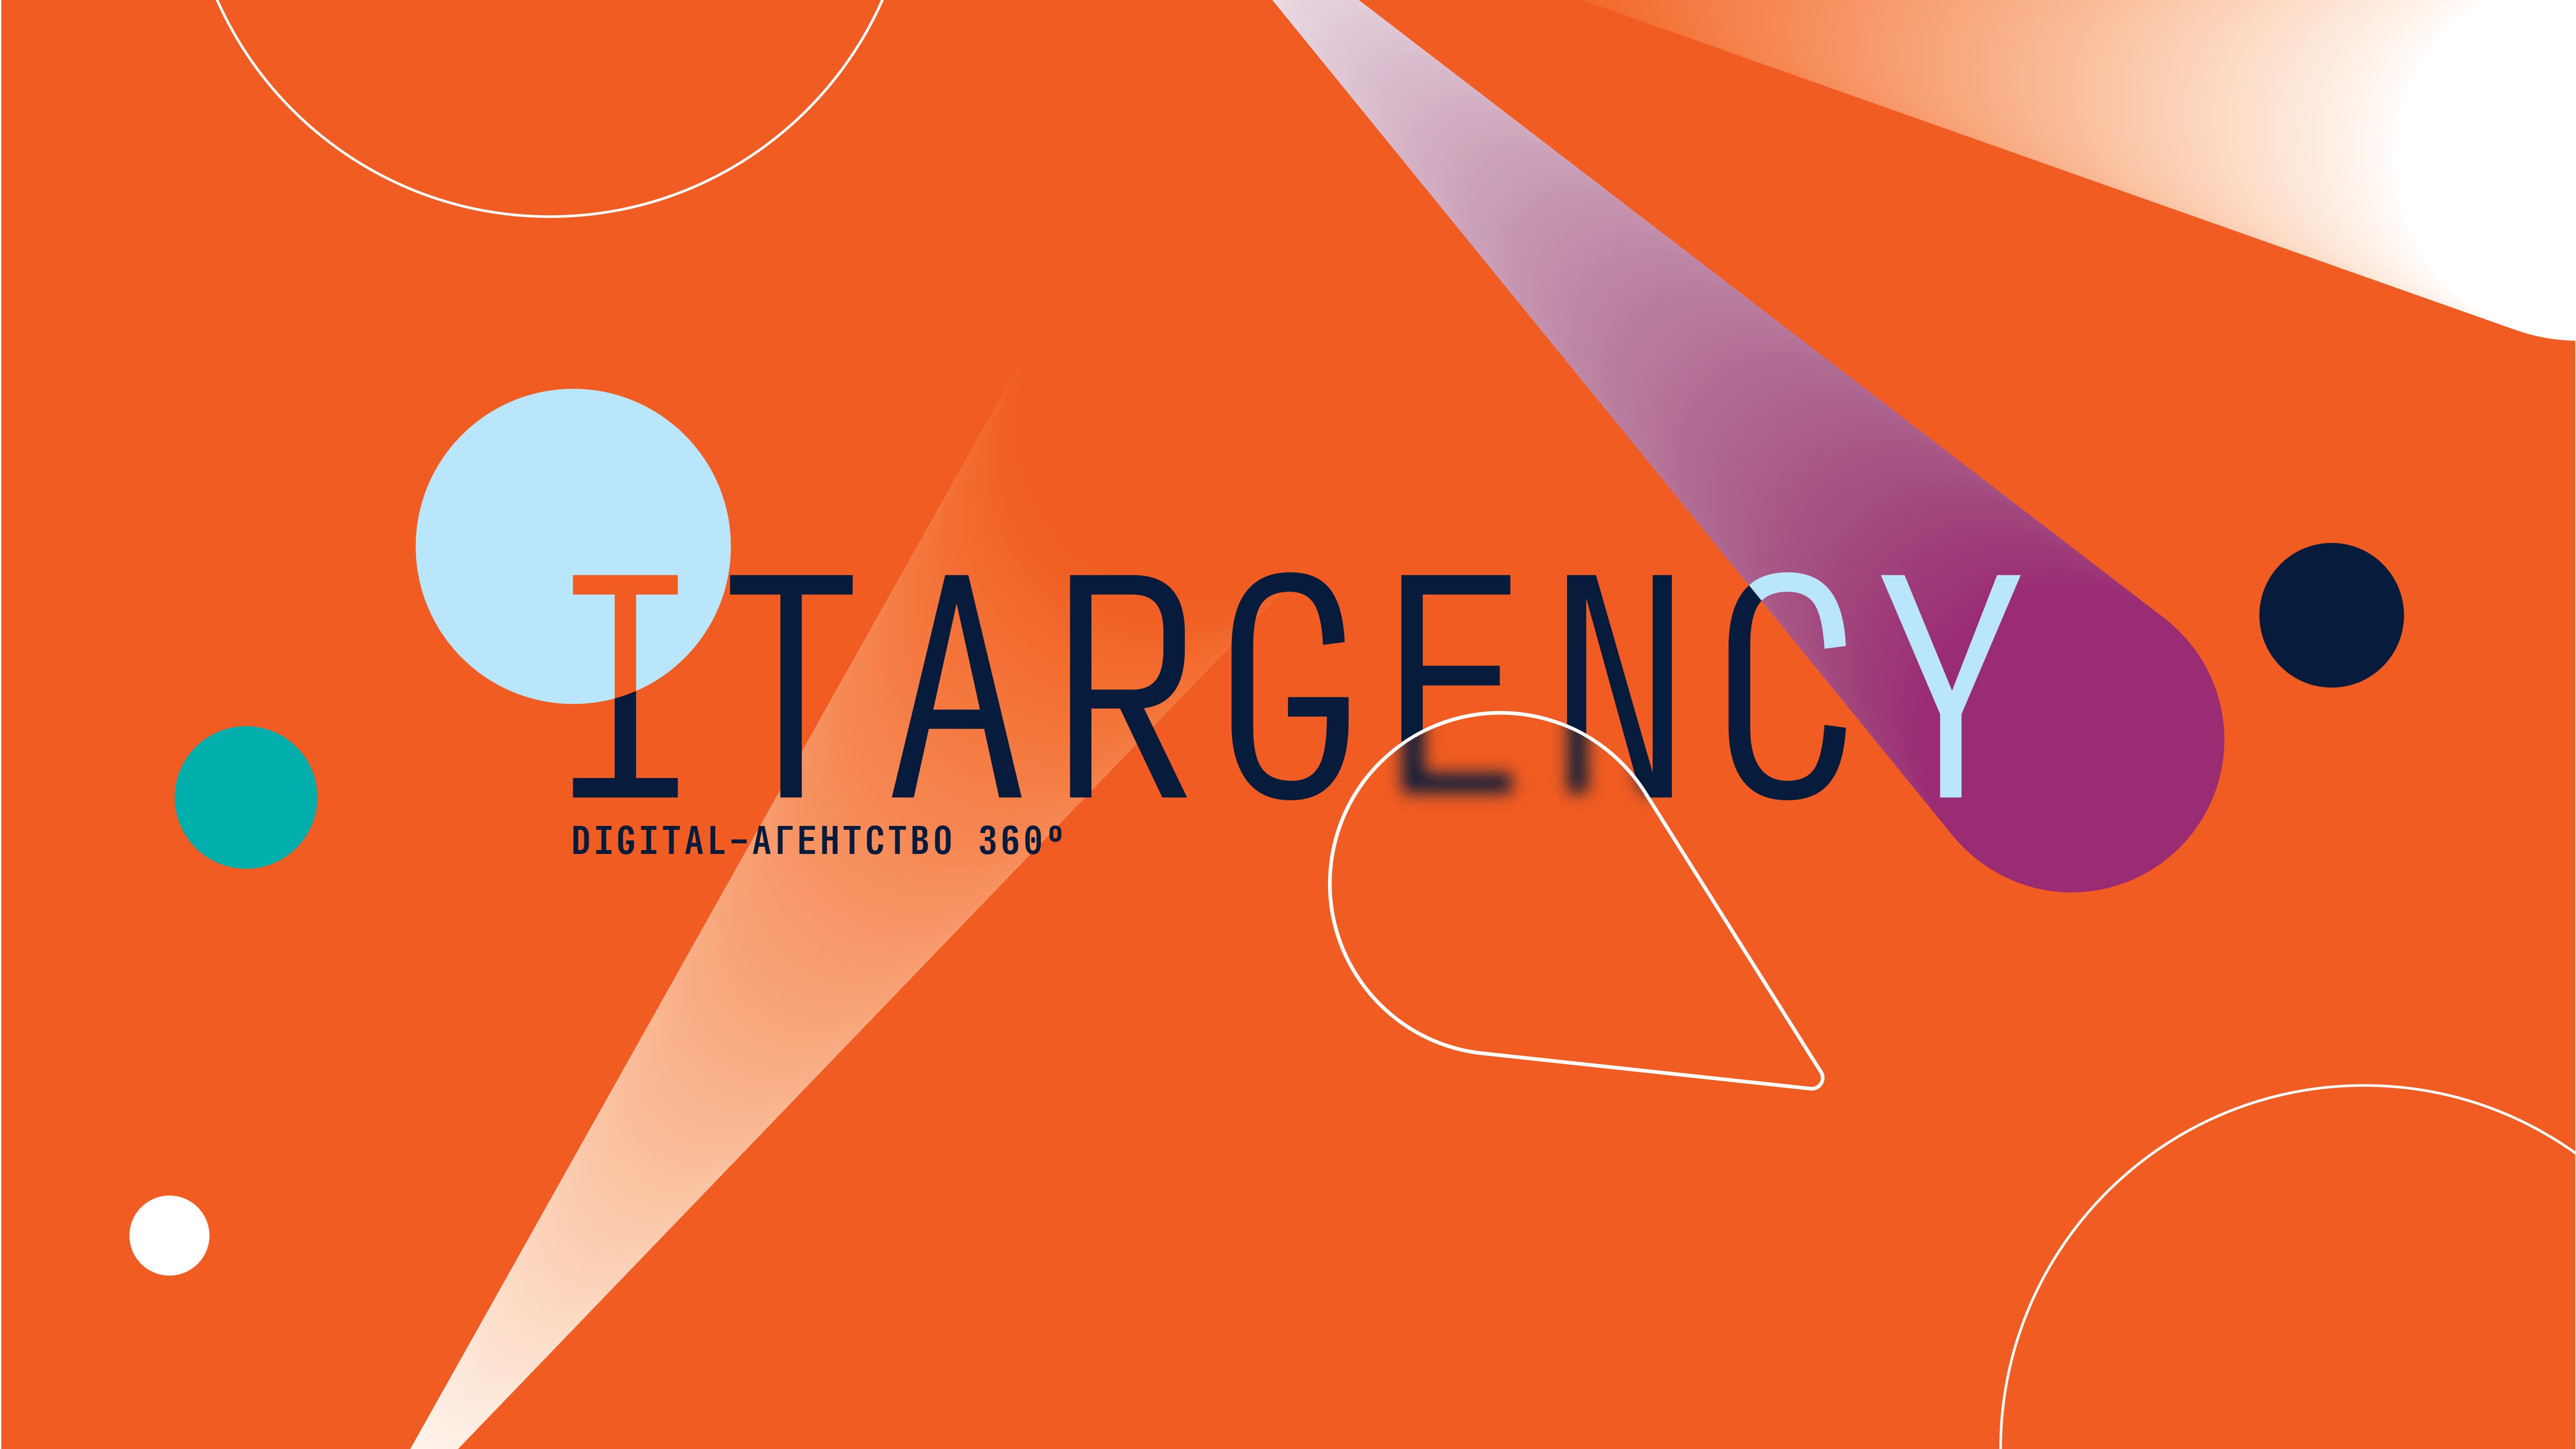 Разработка YouTube-канала для нашего партнера — digital-агентства iTargency